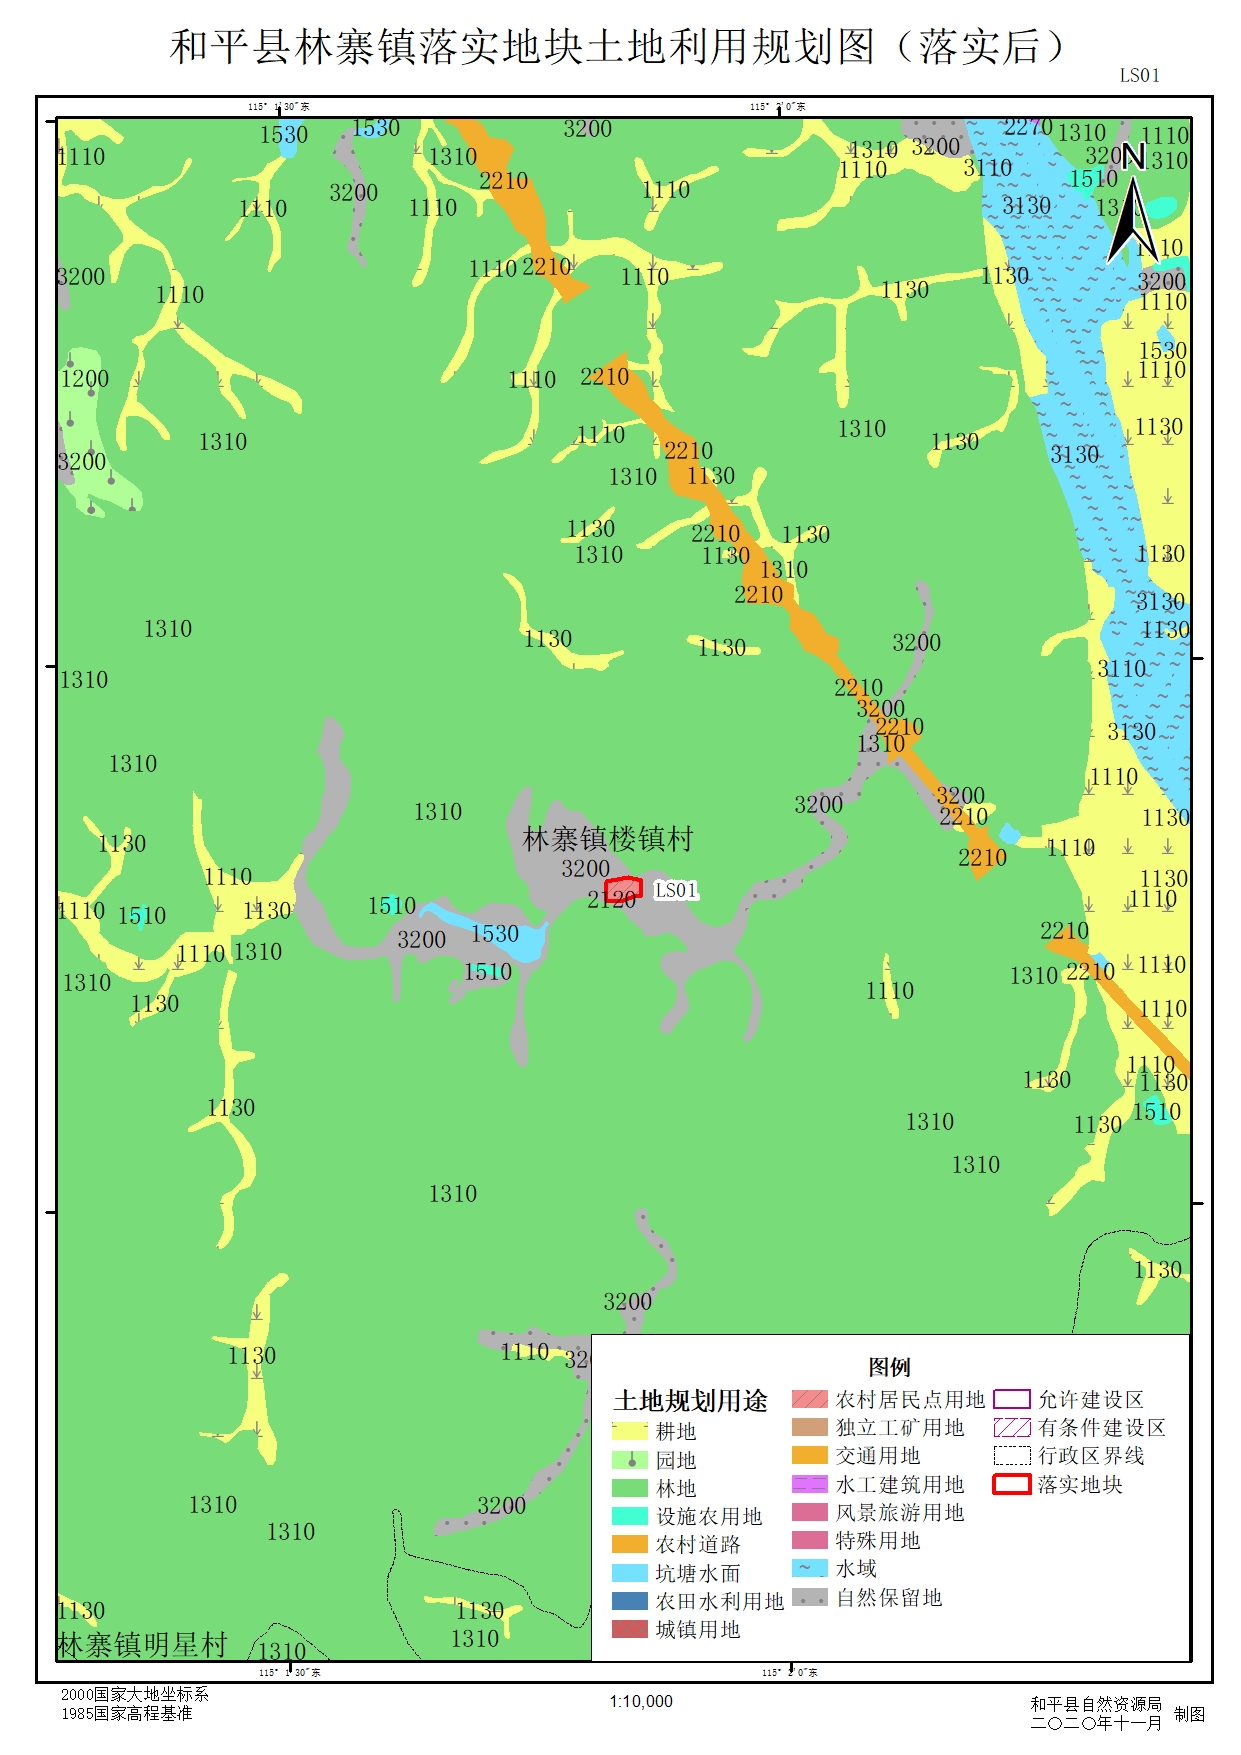 和平县地图|和平县地图全图高清版大图片|旅途风景图片网|www.visacits.com